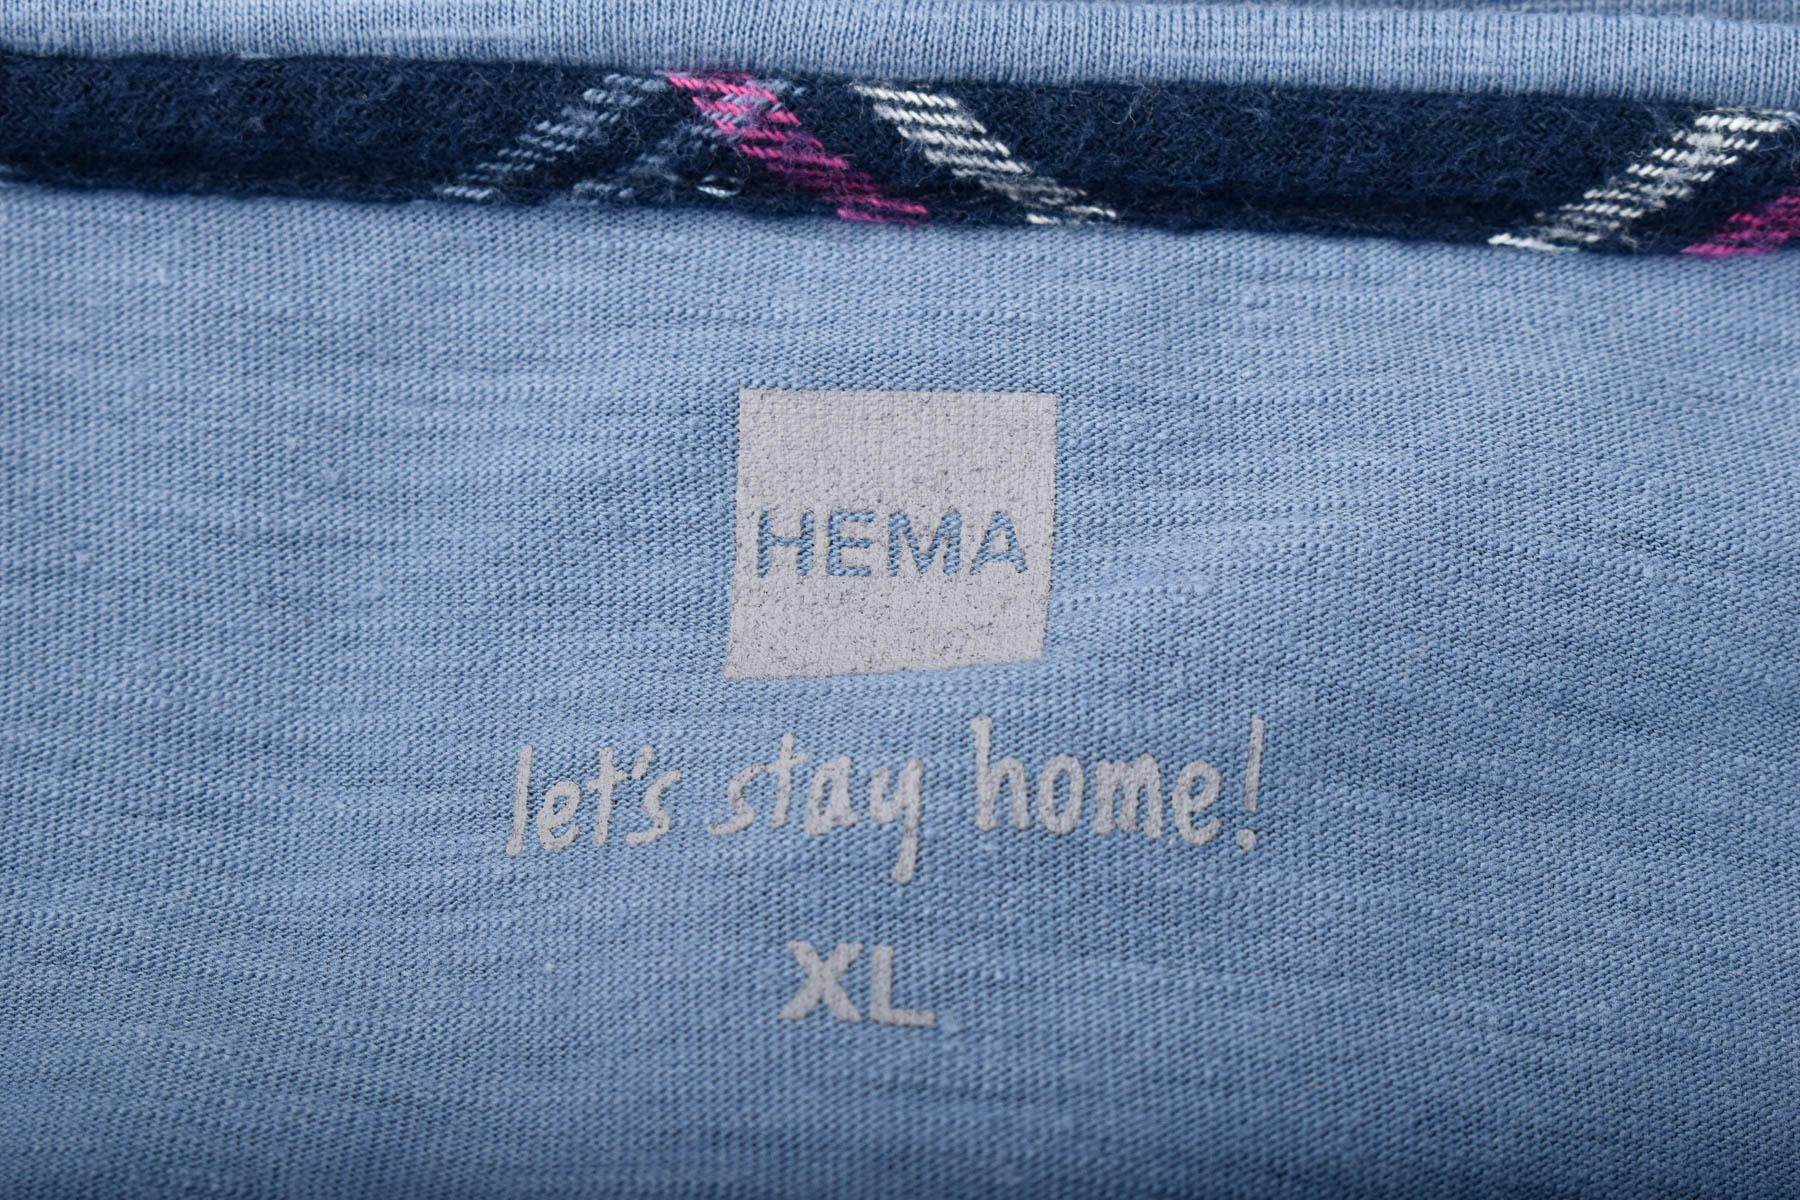 Γυναικεία μπλούζα - Hema - 2